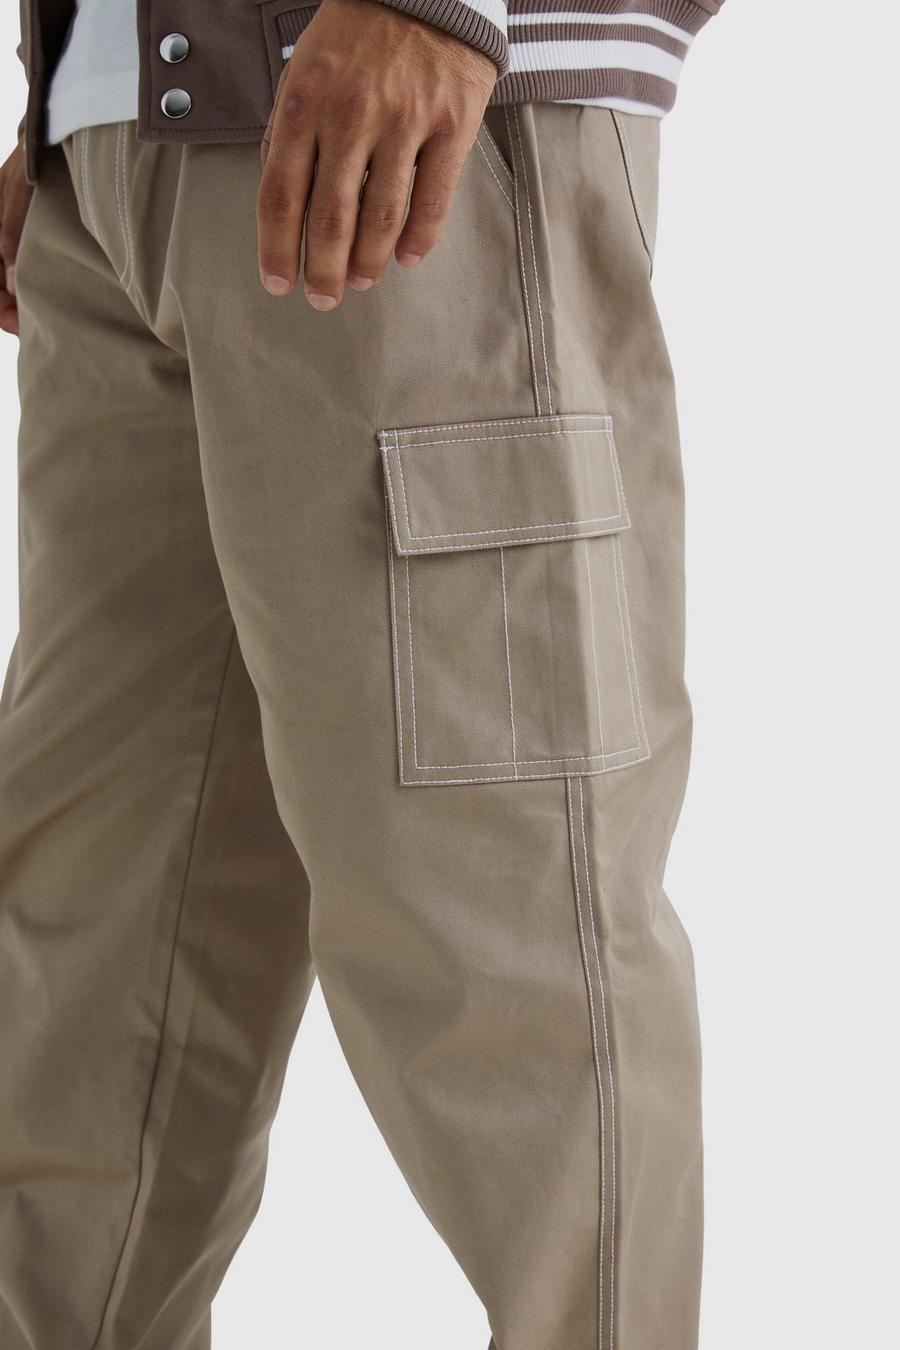 piaskowe spodnie bojówki kieszonki